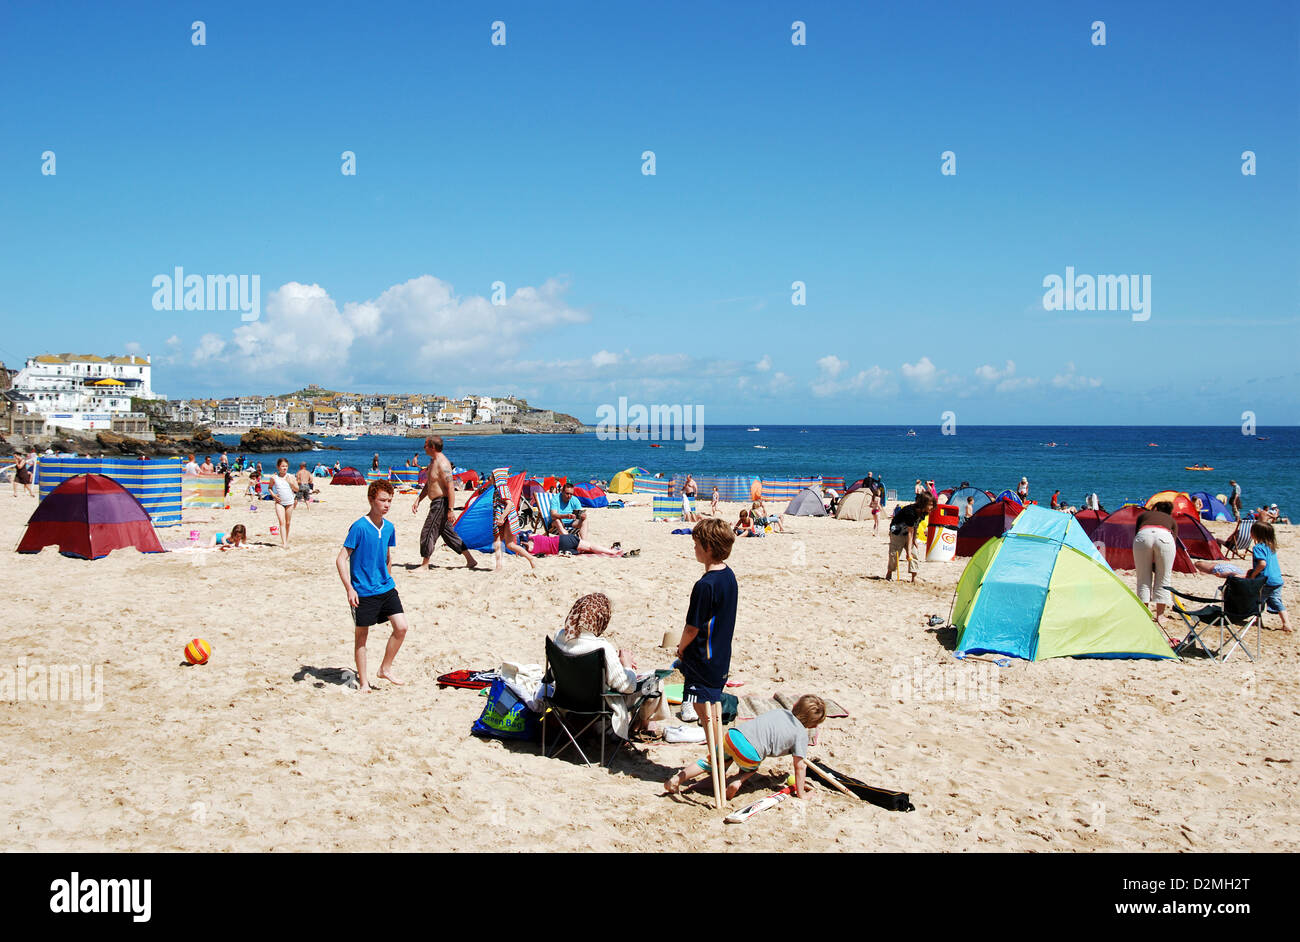 Un jour d'été à la plage de Porthminster, St Ives, Cornwall, UK Banque D'Images